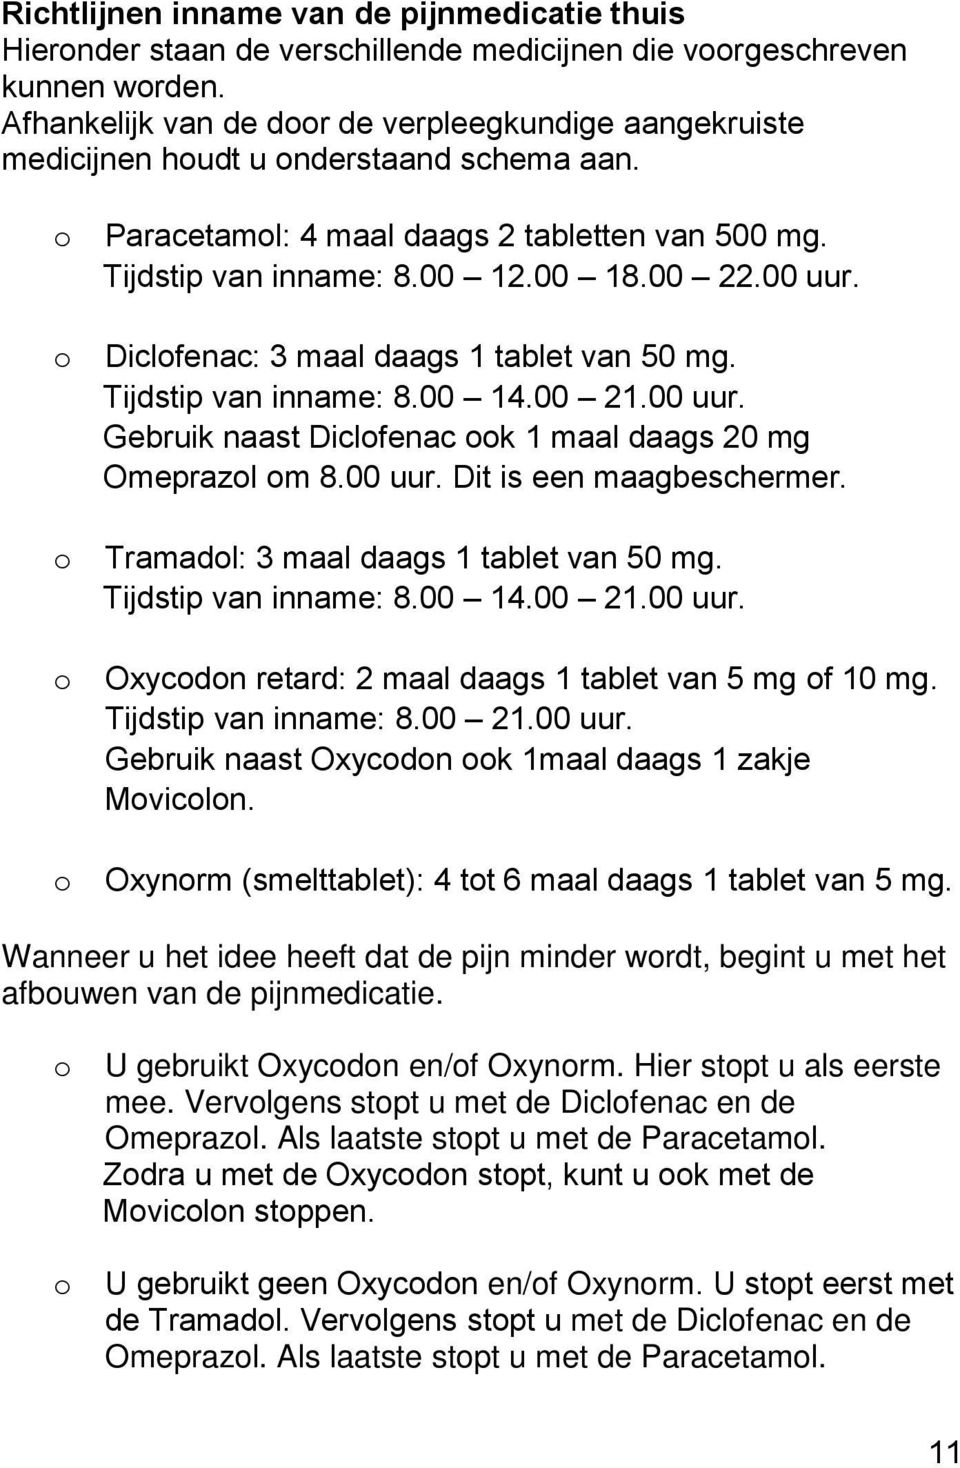 00 uur. Diclofenac: 3 maal daags 1 tablet van 50 mg. Tijdstip van inname: 8.00 14.00 21.00 uur. Gebruik naast Diclofenac ook 1 maal daags 20 mg Omeprazol om 8.00 uur. Dit is een maagbeschermer.